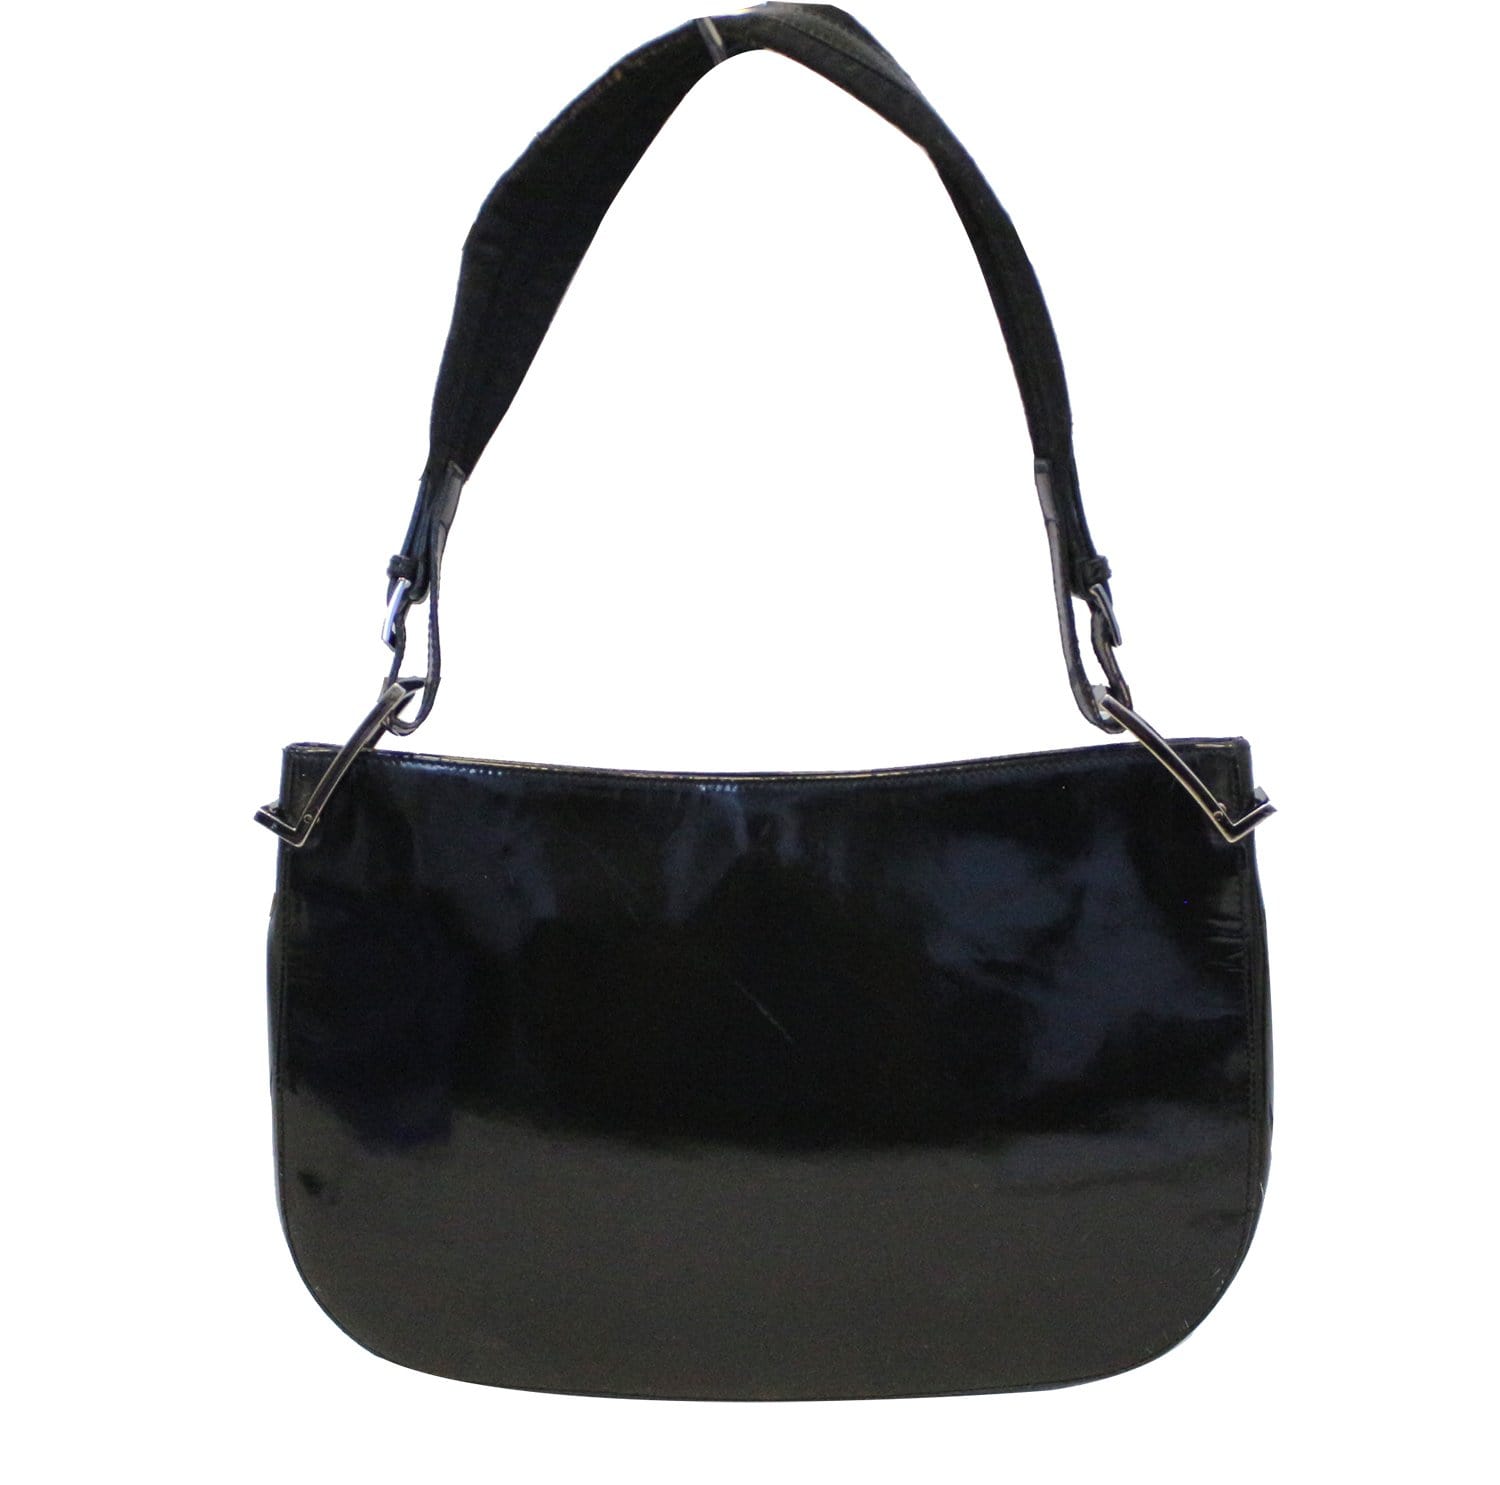 GUCCI Black Leather Hobo Shoulder Bag - Sale